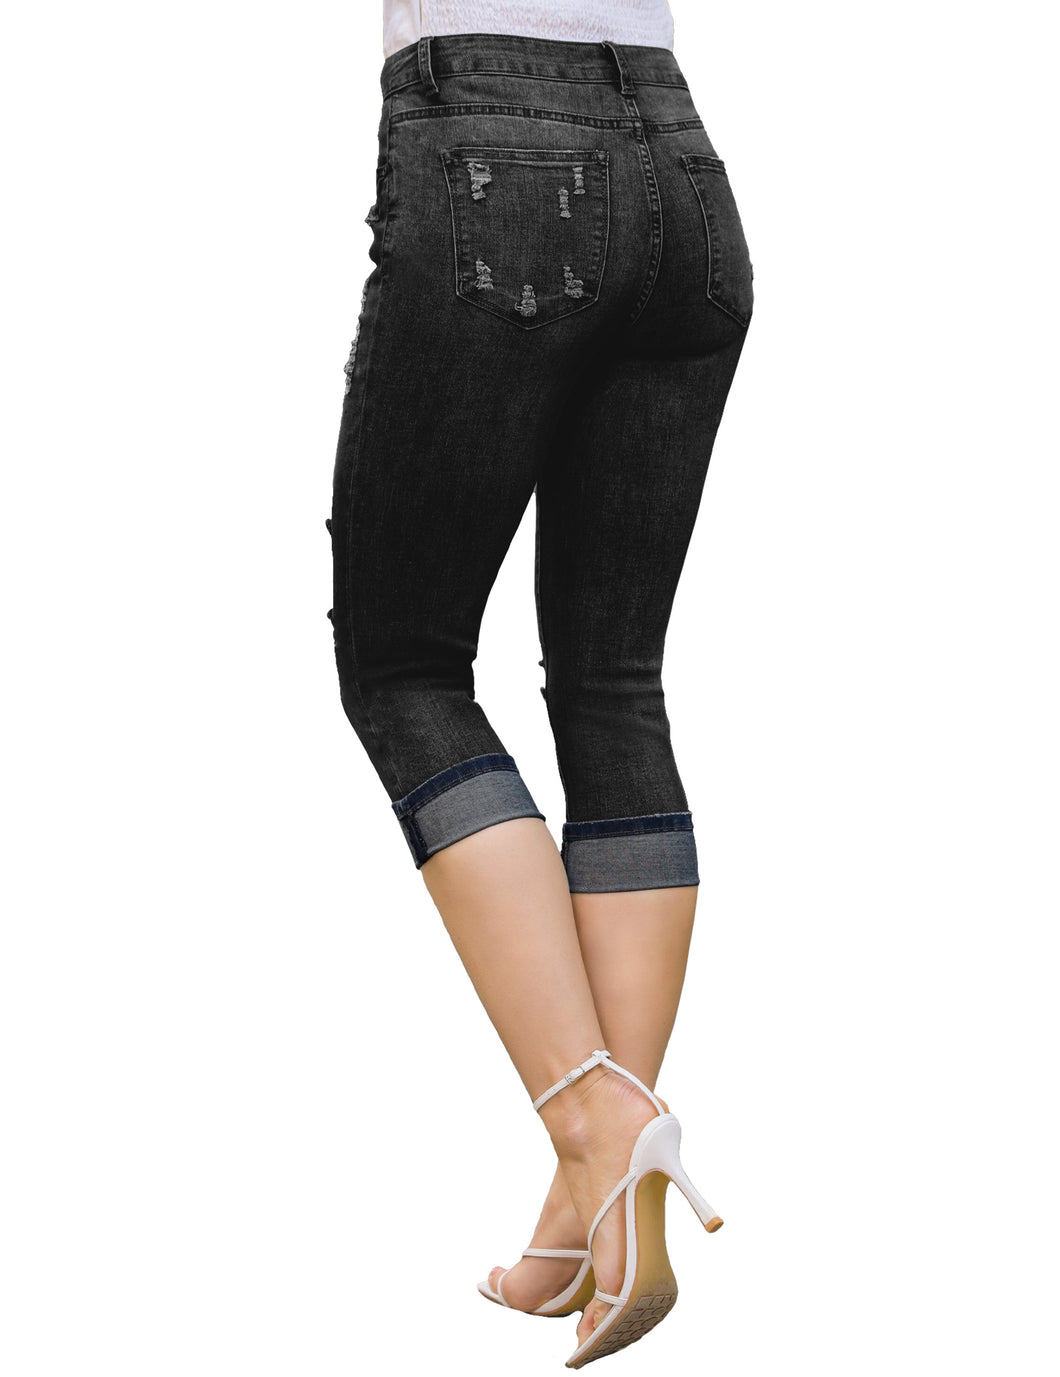 Women's Capri Jeans & Cropped Pants